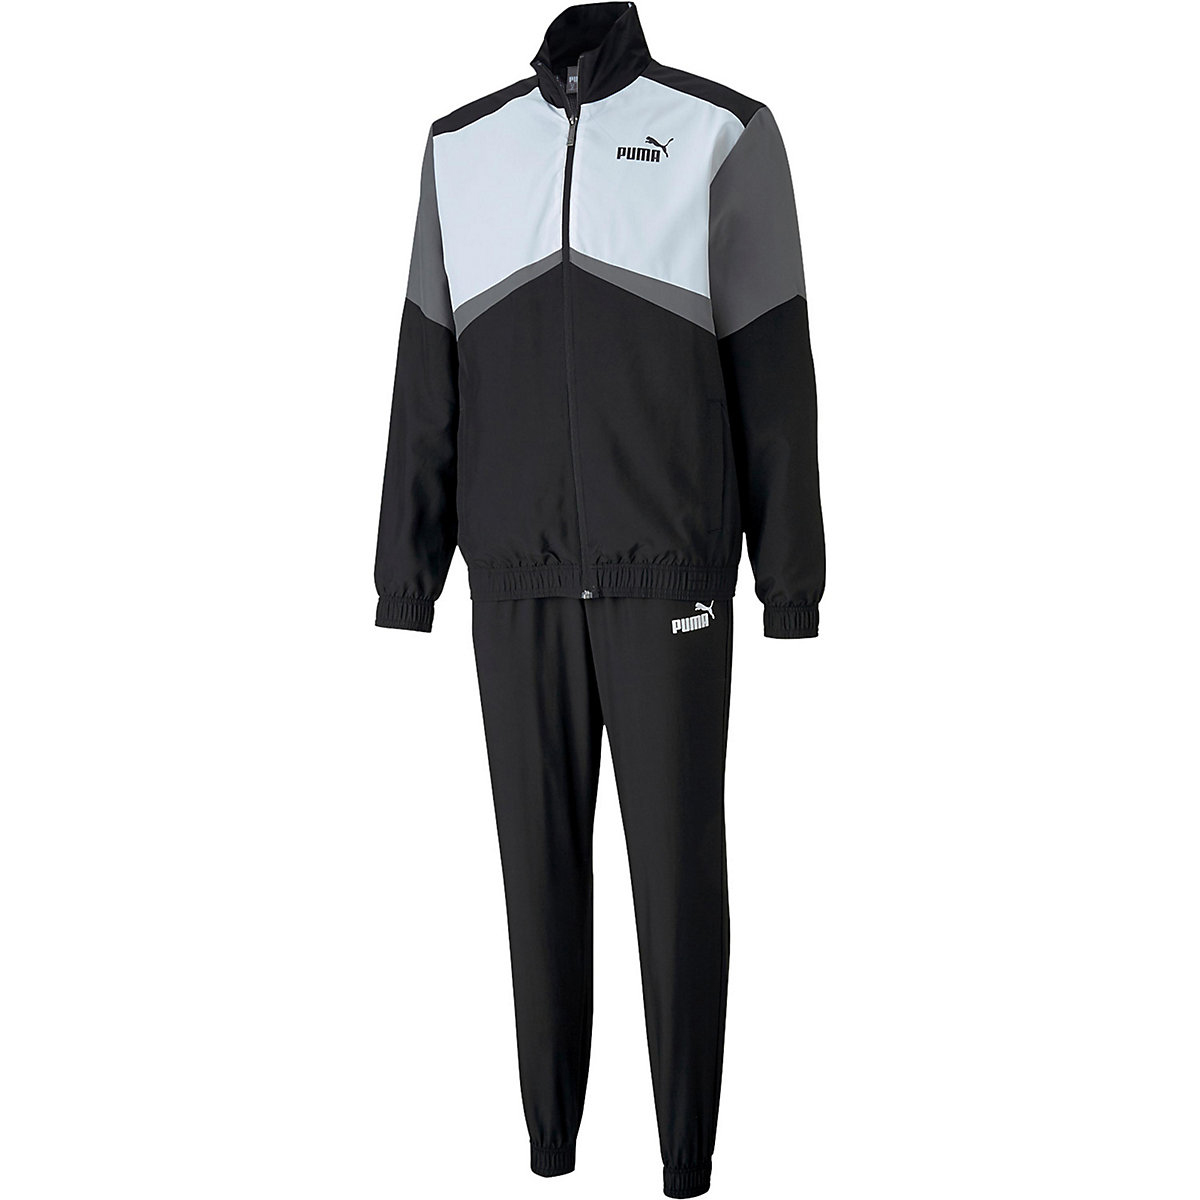 Puma CB Retro Suit Woven CL Trainigsanzug Herren Fußball Sportanzug 581598 01 schwarz